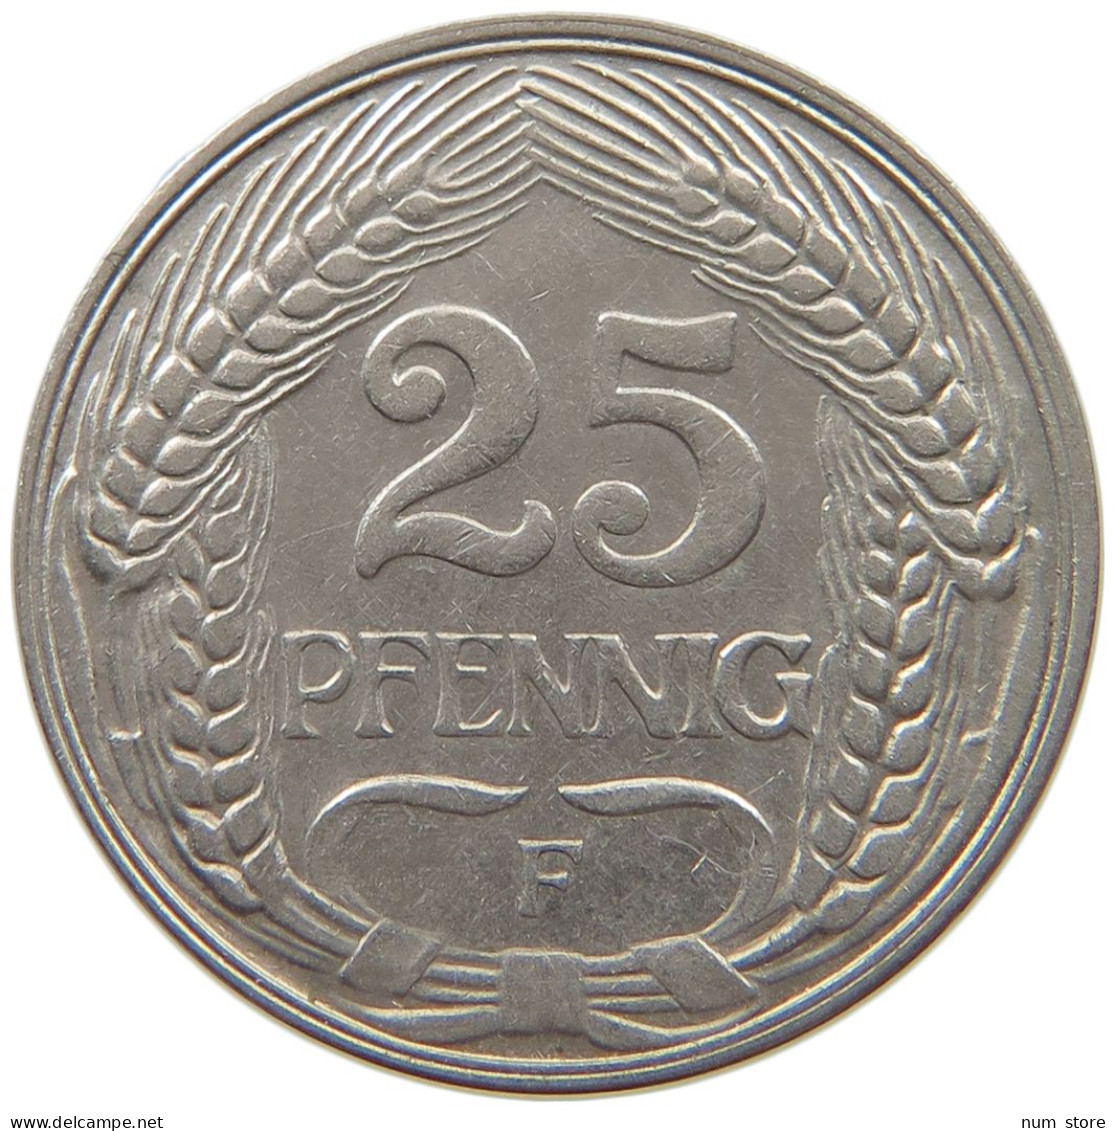 KAISERREICH 25 PFENNIG 1910 F J.18, 25 PFENNIG 1910 F #MA 000170 - 25 Pfennig